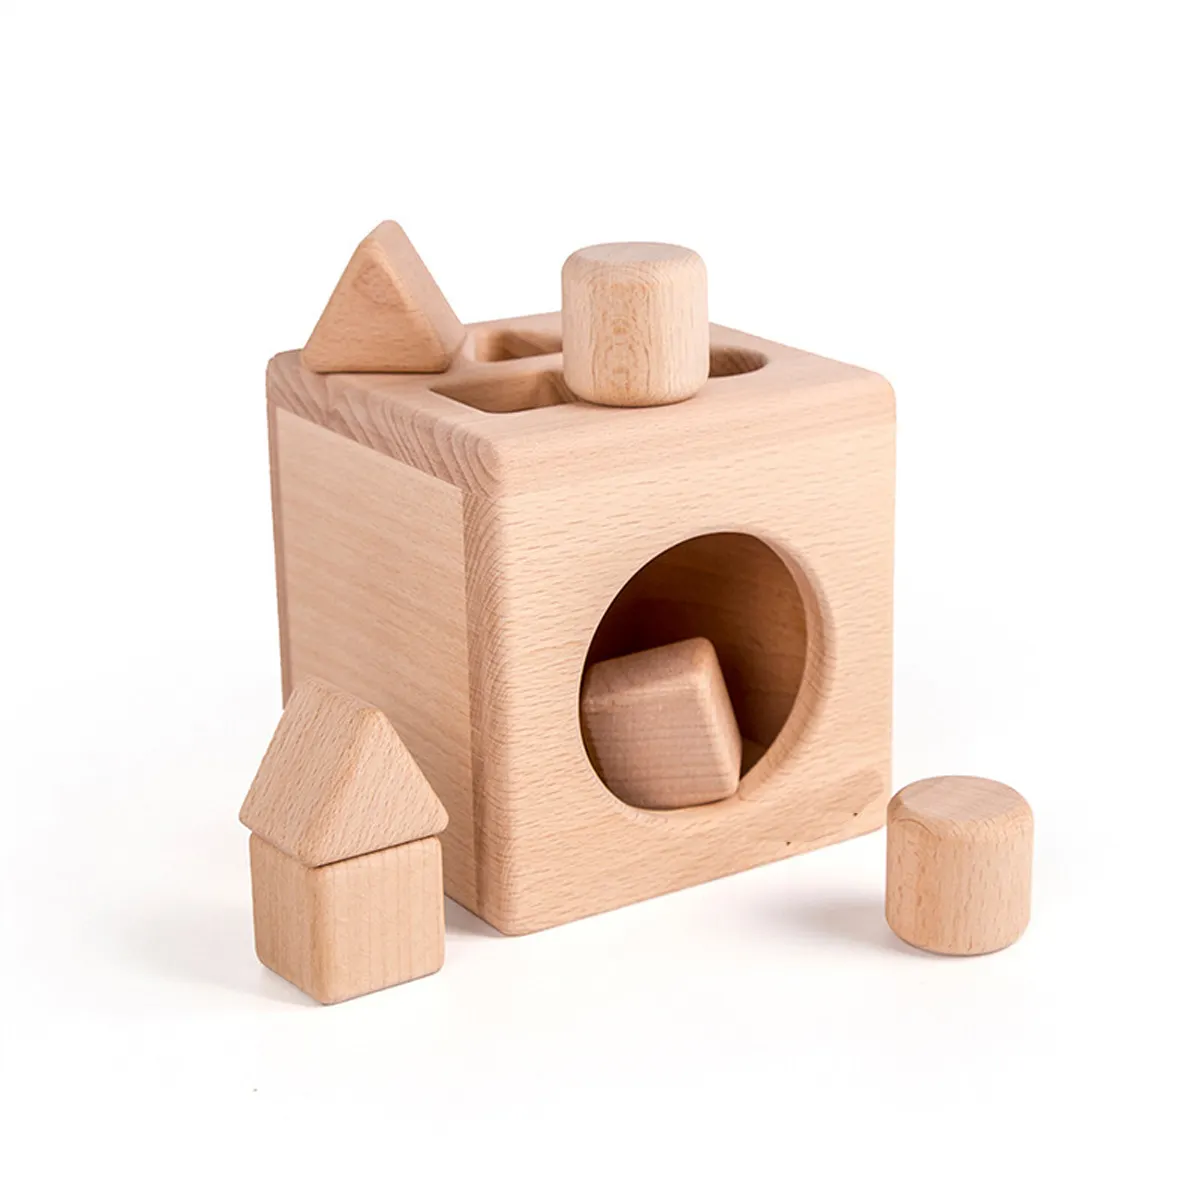 2021 Yiwu деревянные игрушки для детей Монтессори игрушки блок развивающие матч деревянная коробка игрушка детская развивающая игрушка WBC003